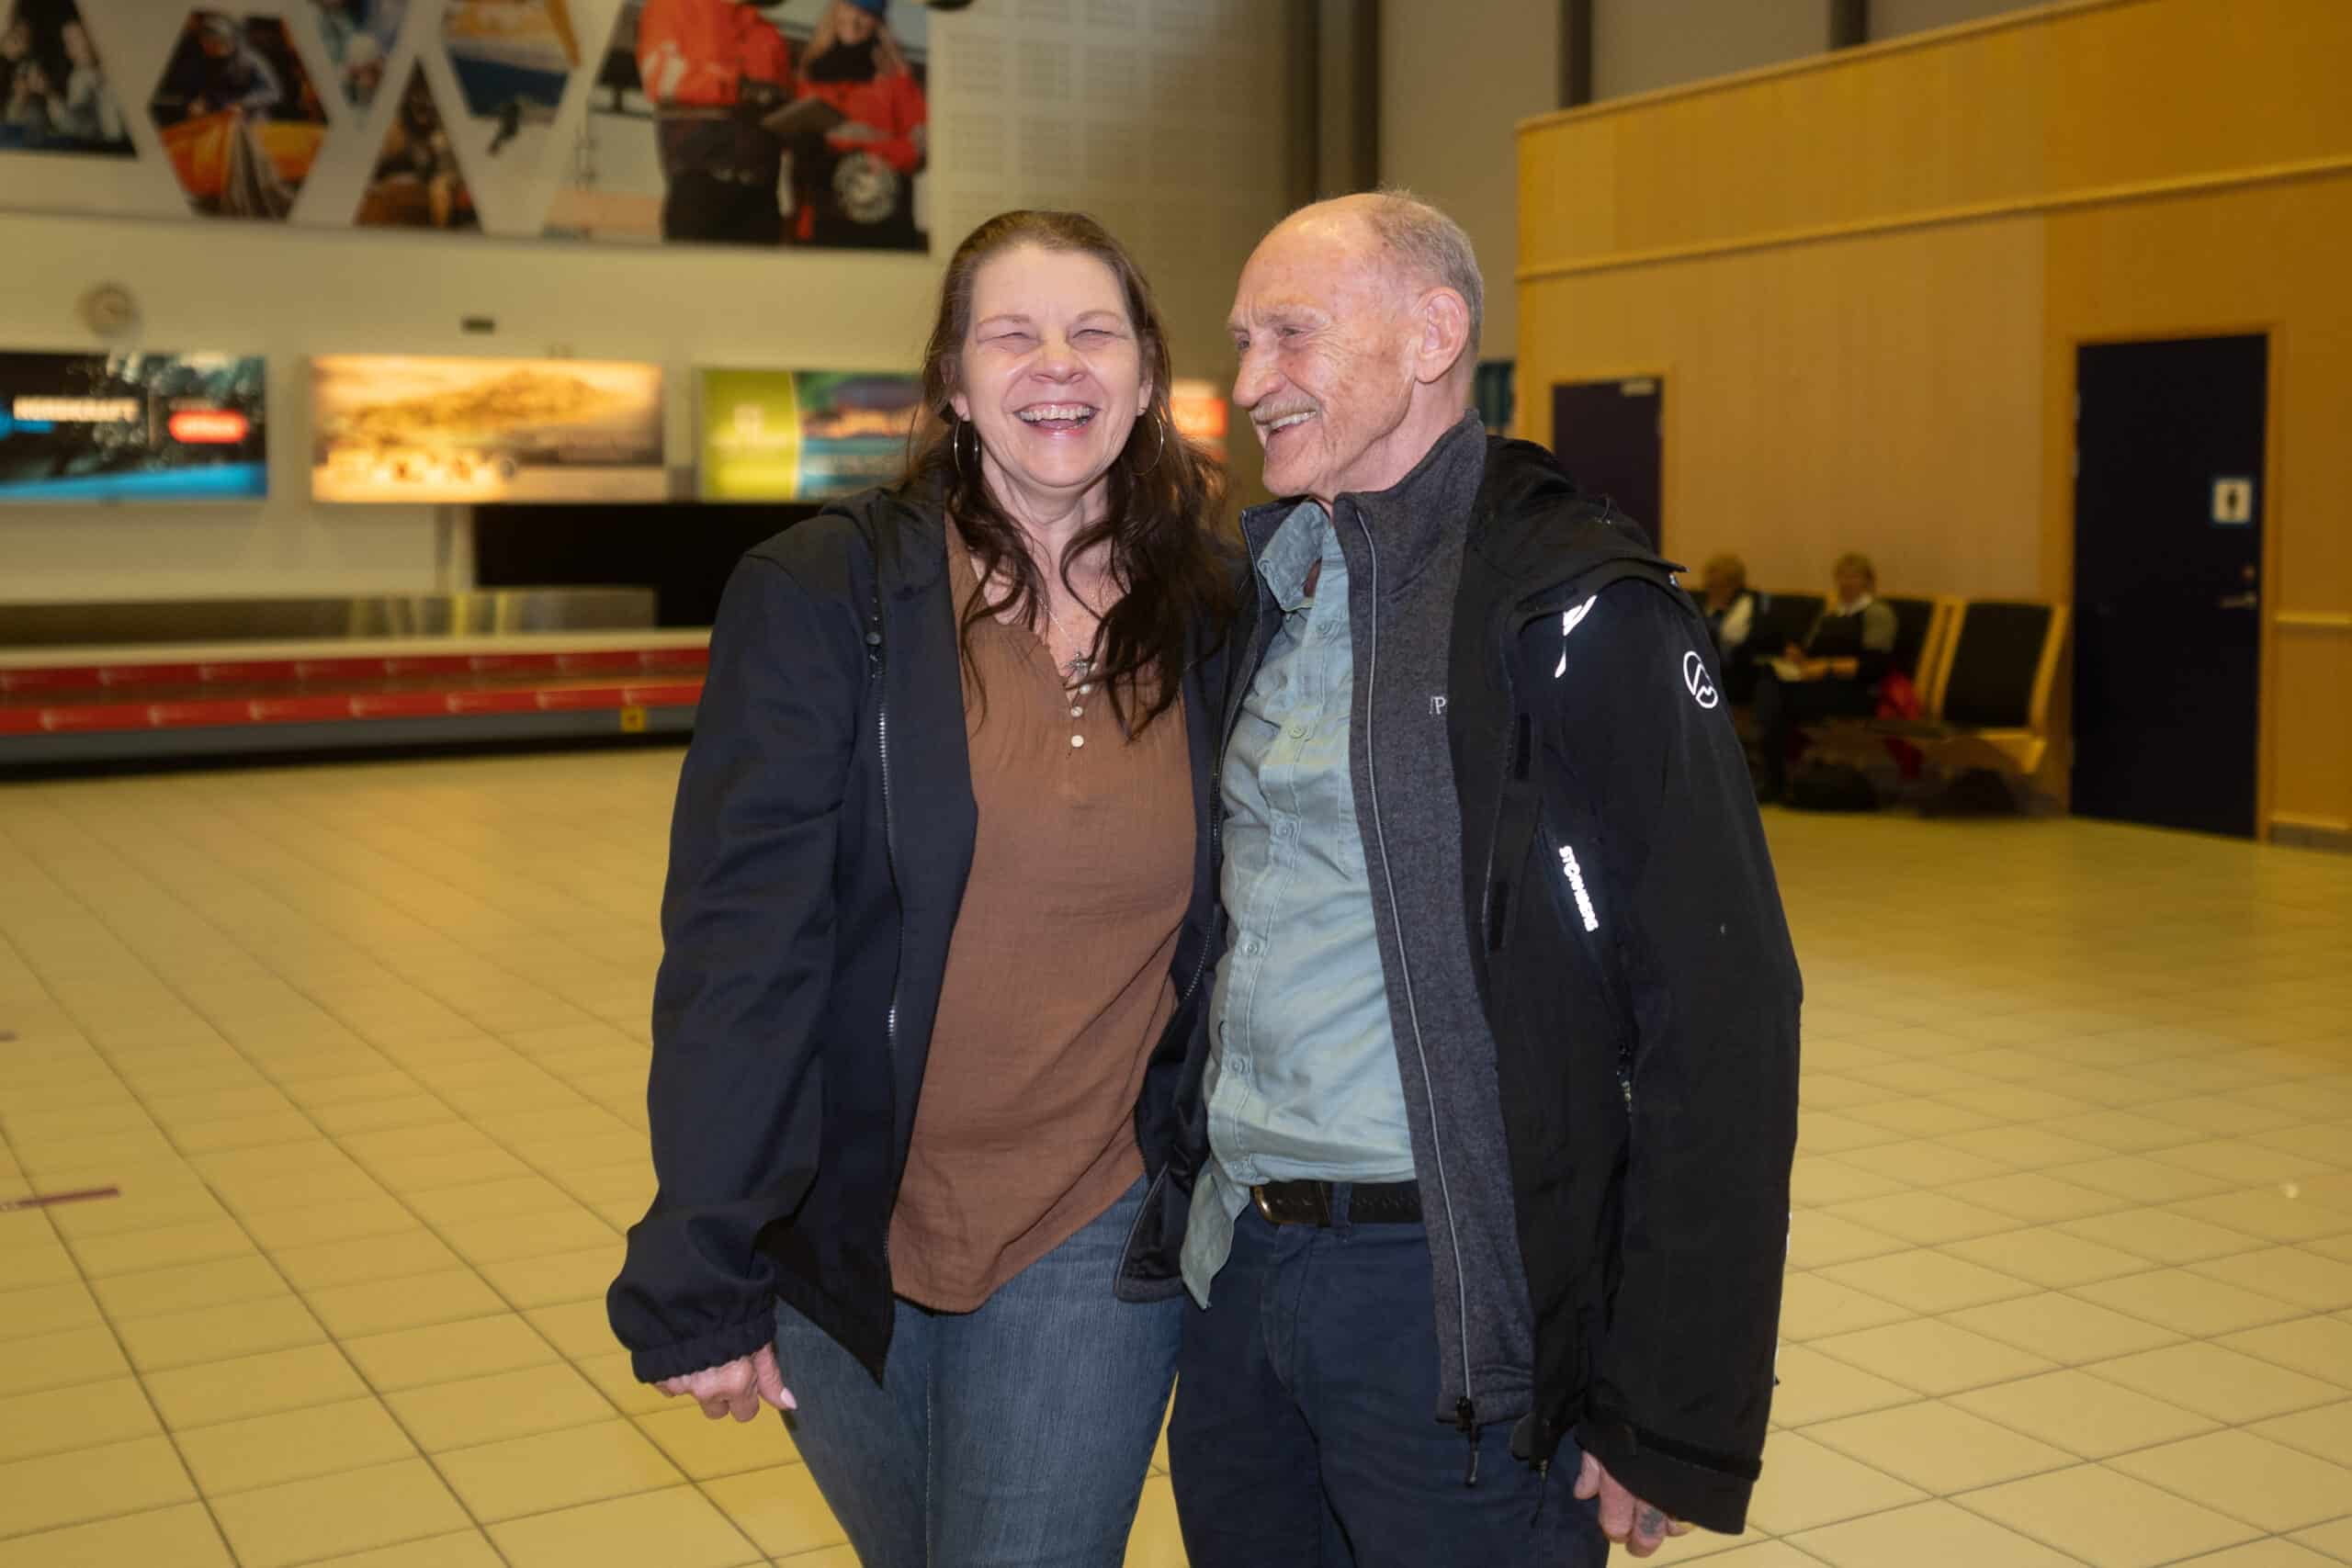 Patty med faren sin på flyplassen